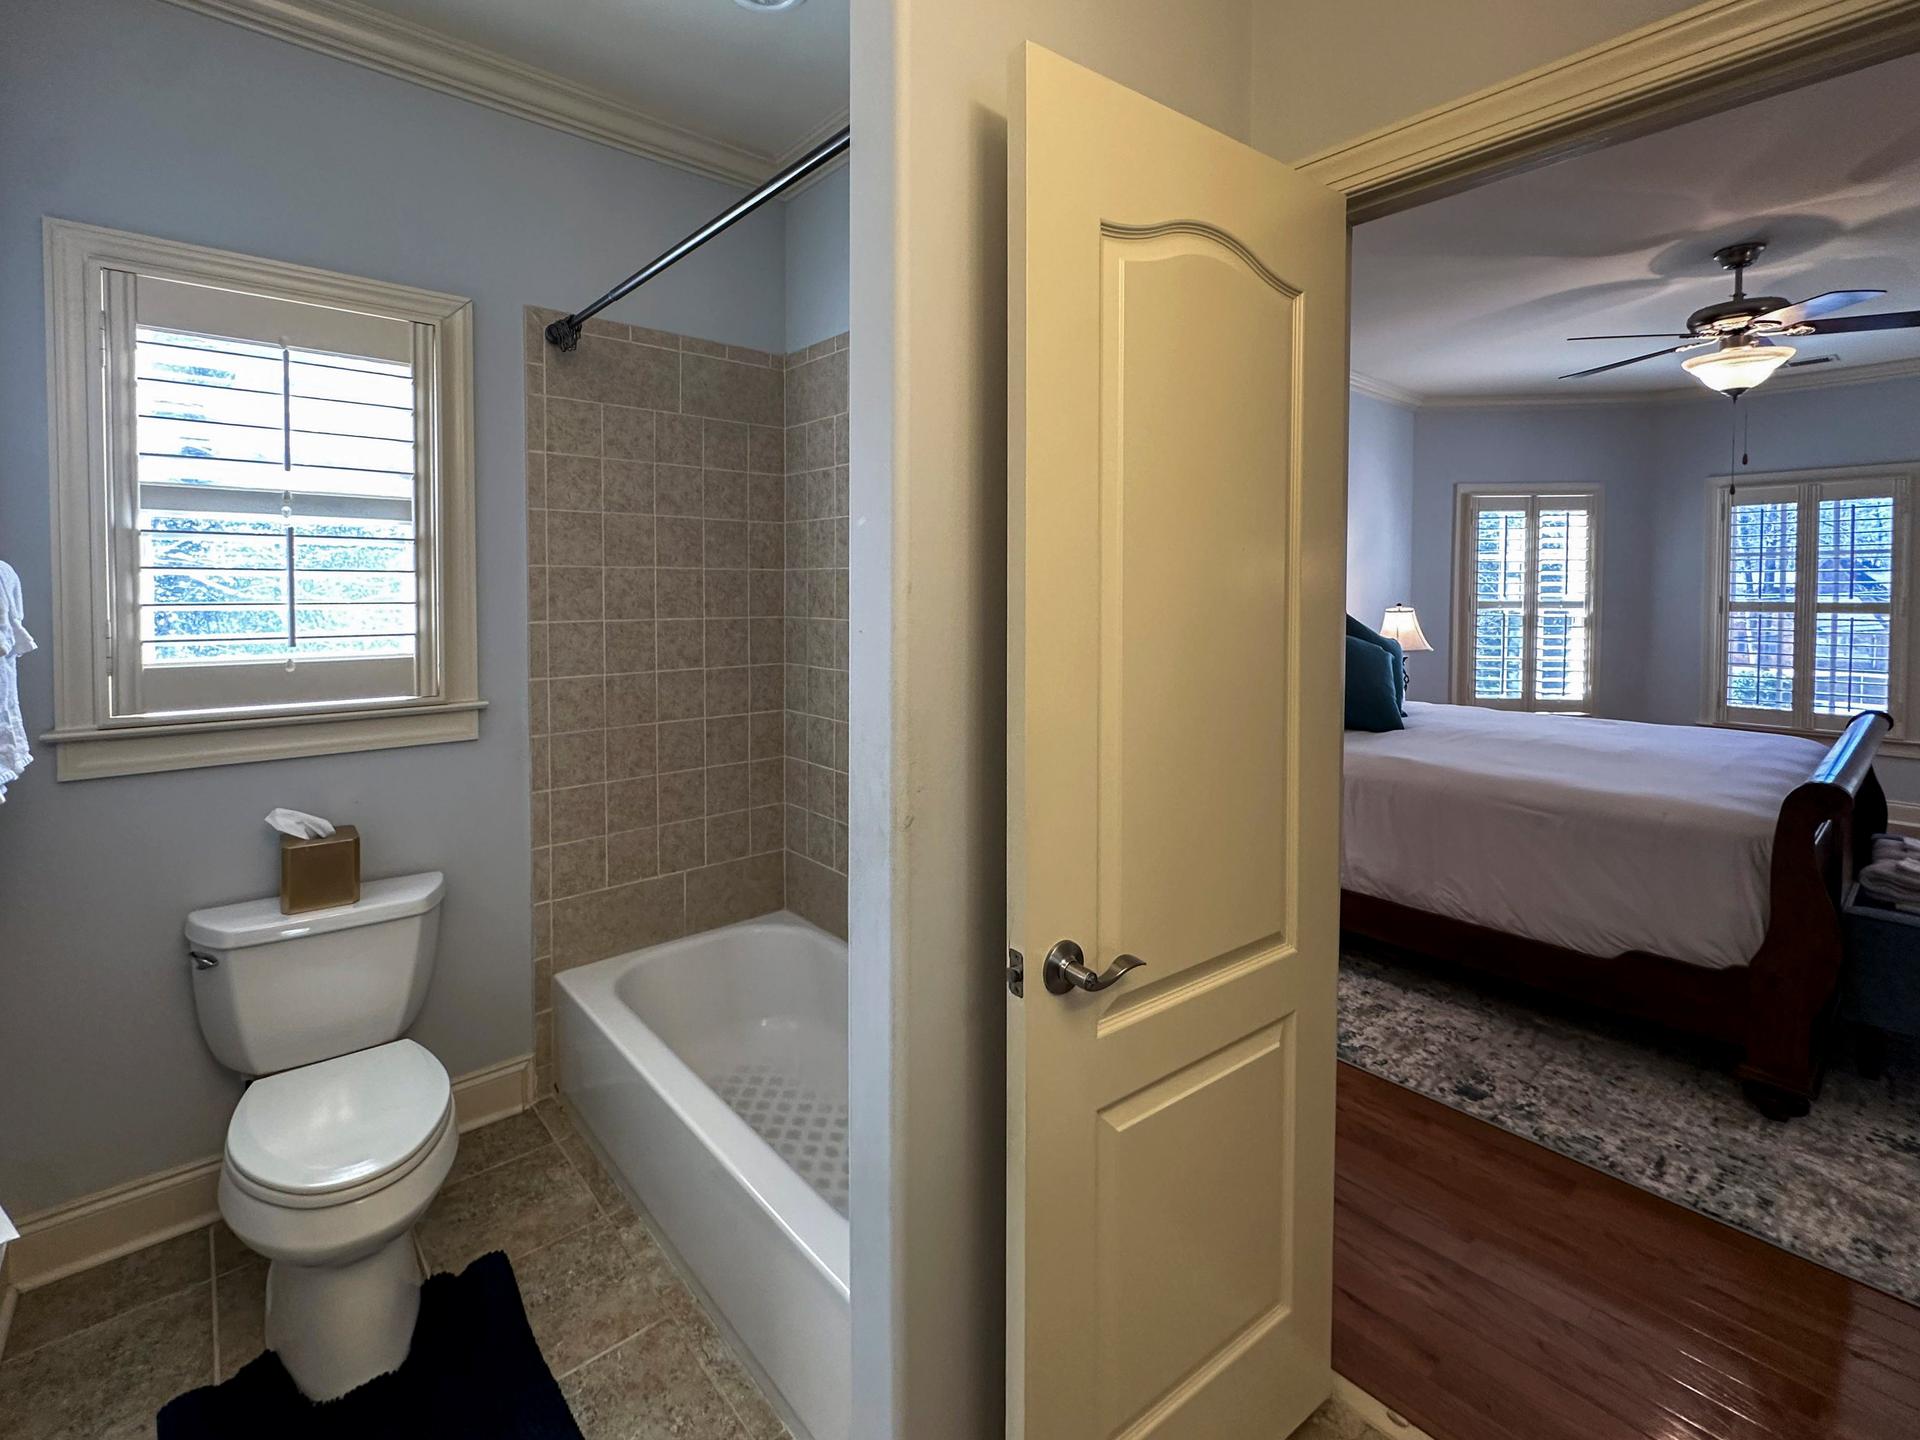 bedroom, detected:bathtub, bed, window blind, ceiling fan